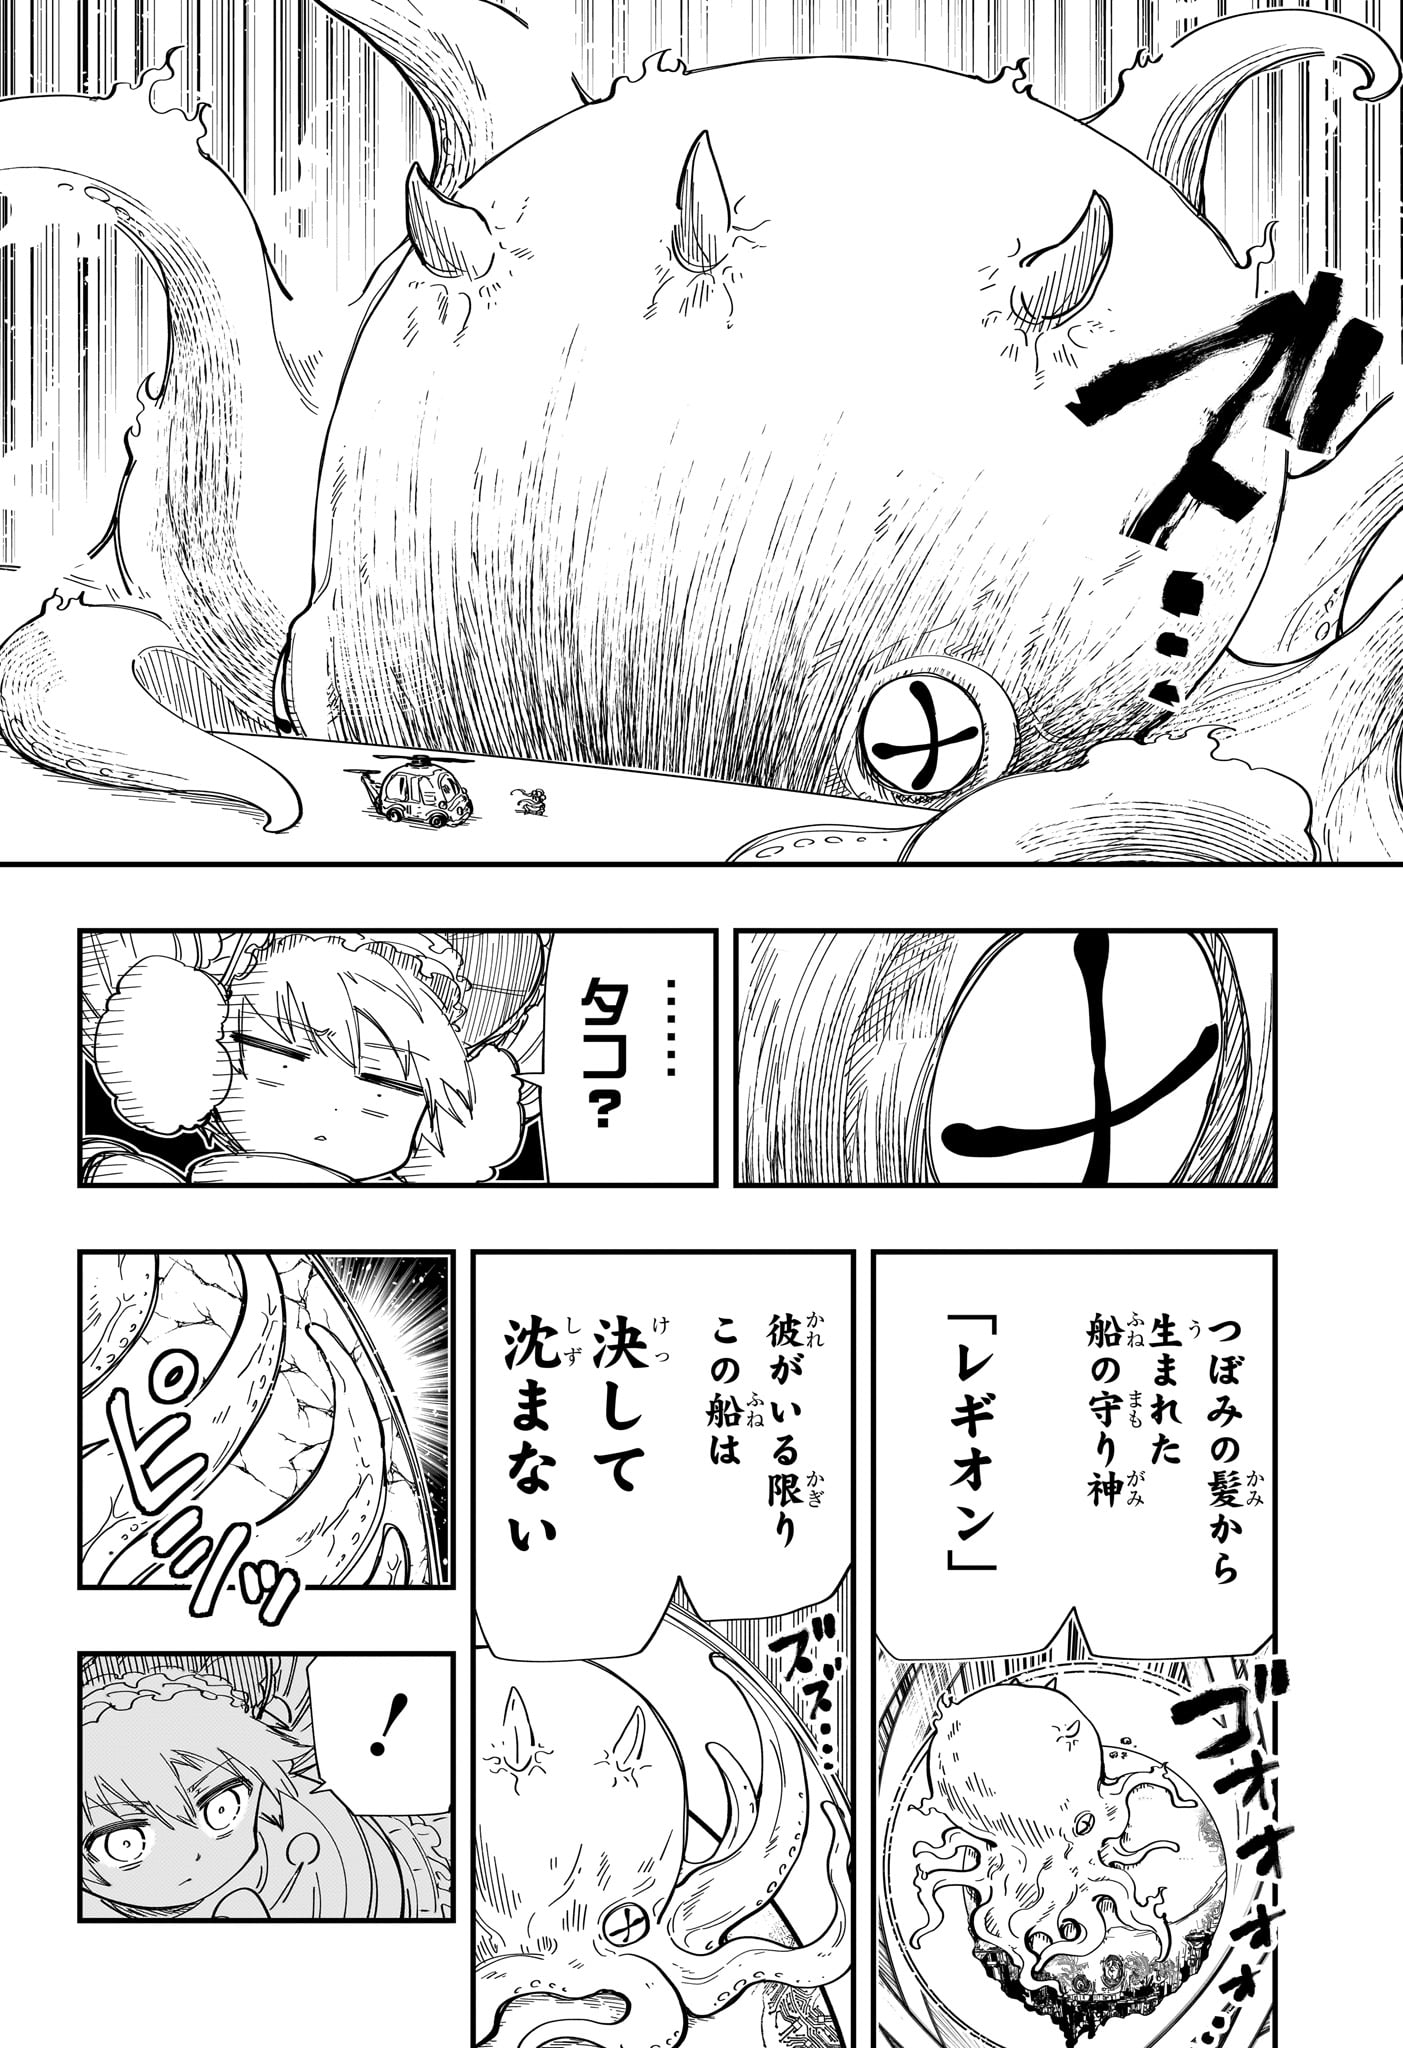 Yozakura-san Chi no Daisakusen - Chapter 223 - Page 2